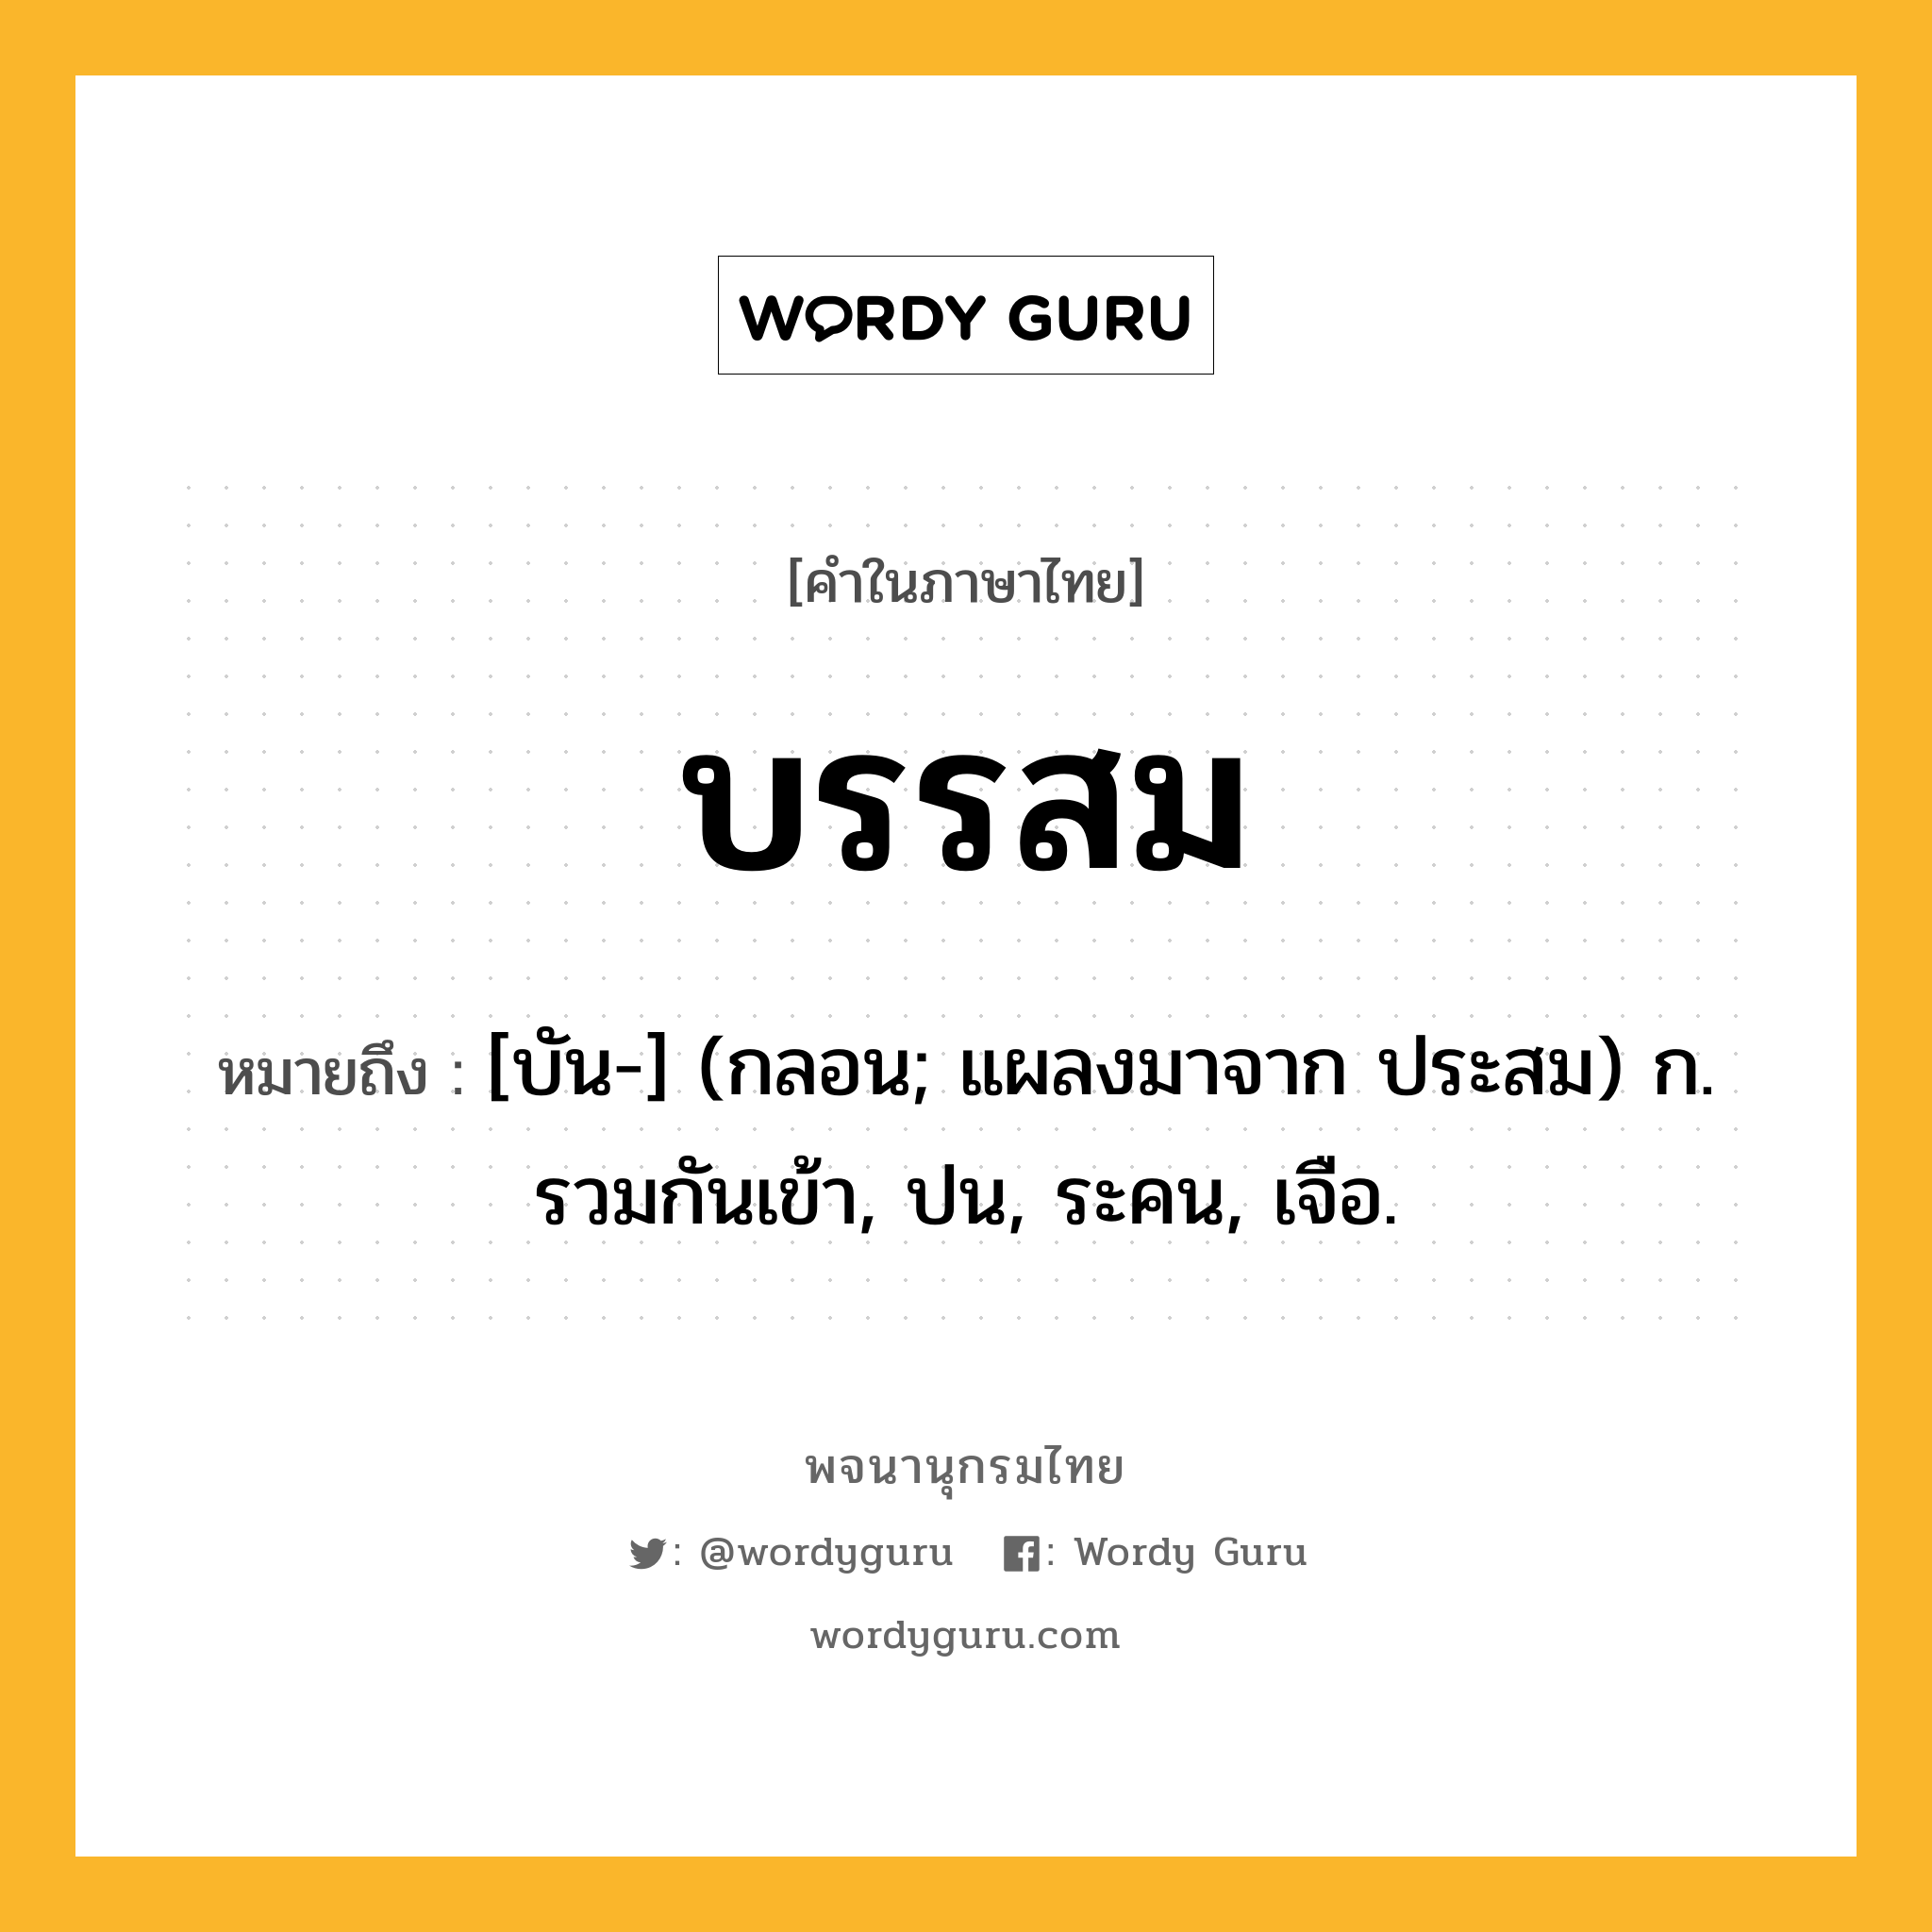 บรรสม หมายถึงอะไร?, คำในภาษาไทย บรรสม หมายถึง [บัน-] (กลอน; แผลงมาจาก ประสม) ก. รวมกันเข้า, ปน, ระคน, เจือ.